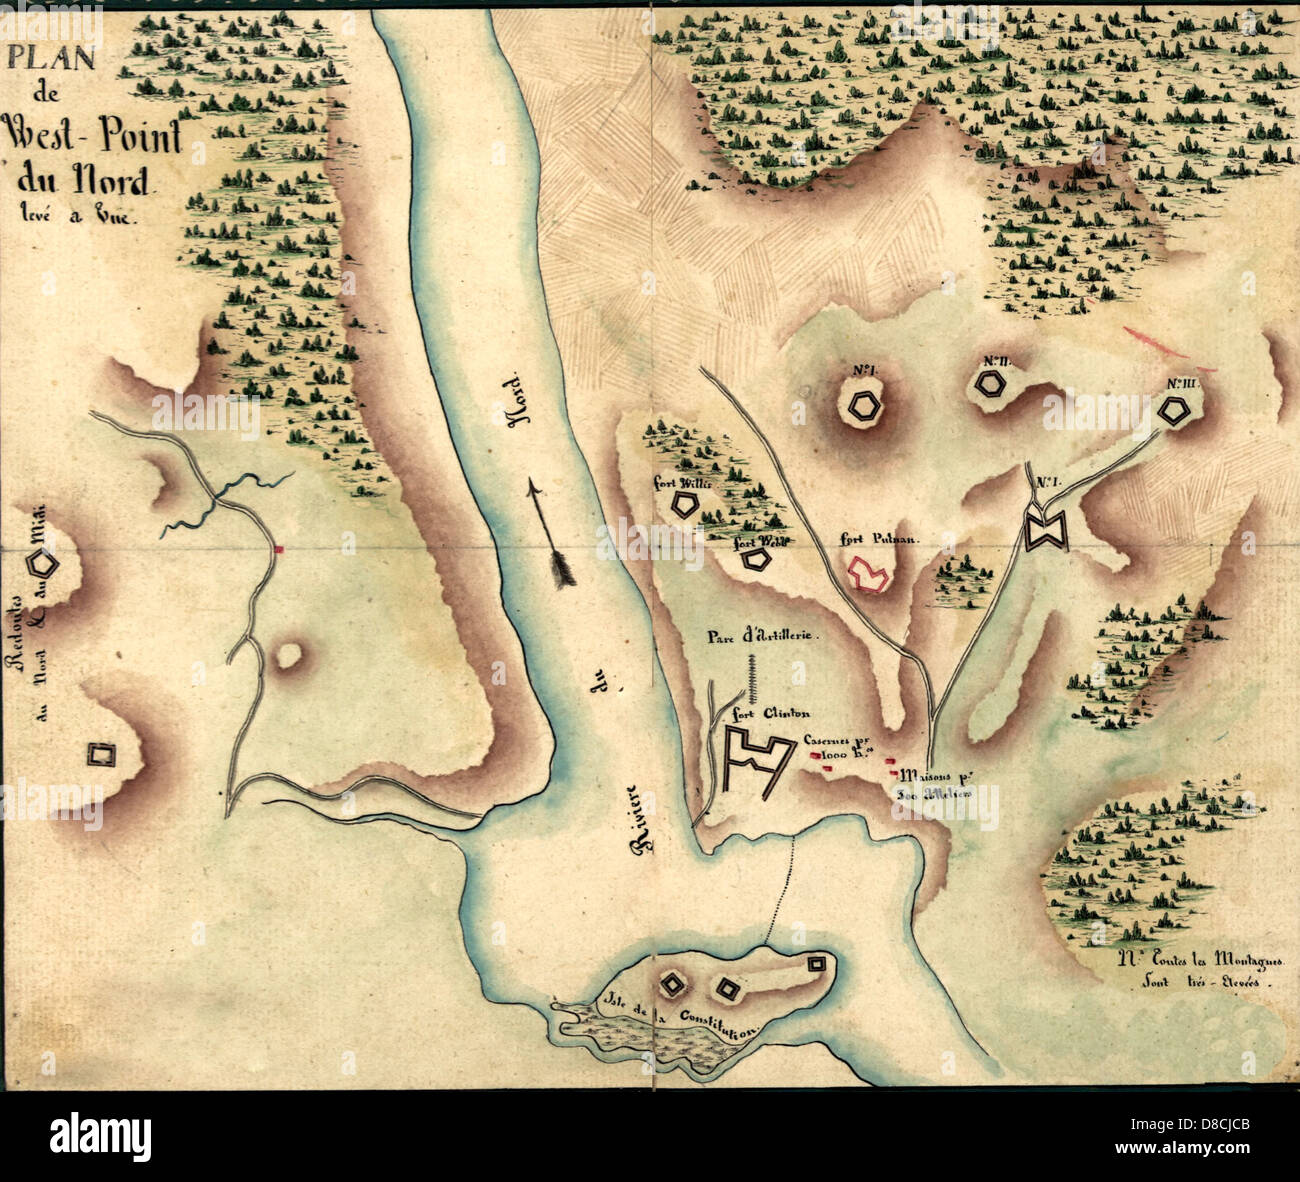 Plan de West-Point du Nord, Levé eine Vue 1780. Karte von North West Point, 1780 Stockfoto